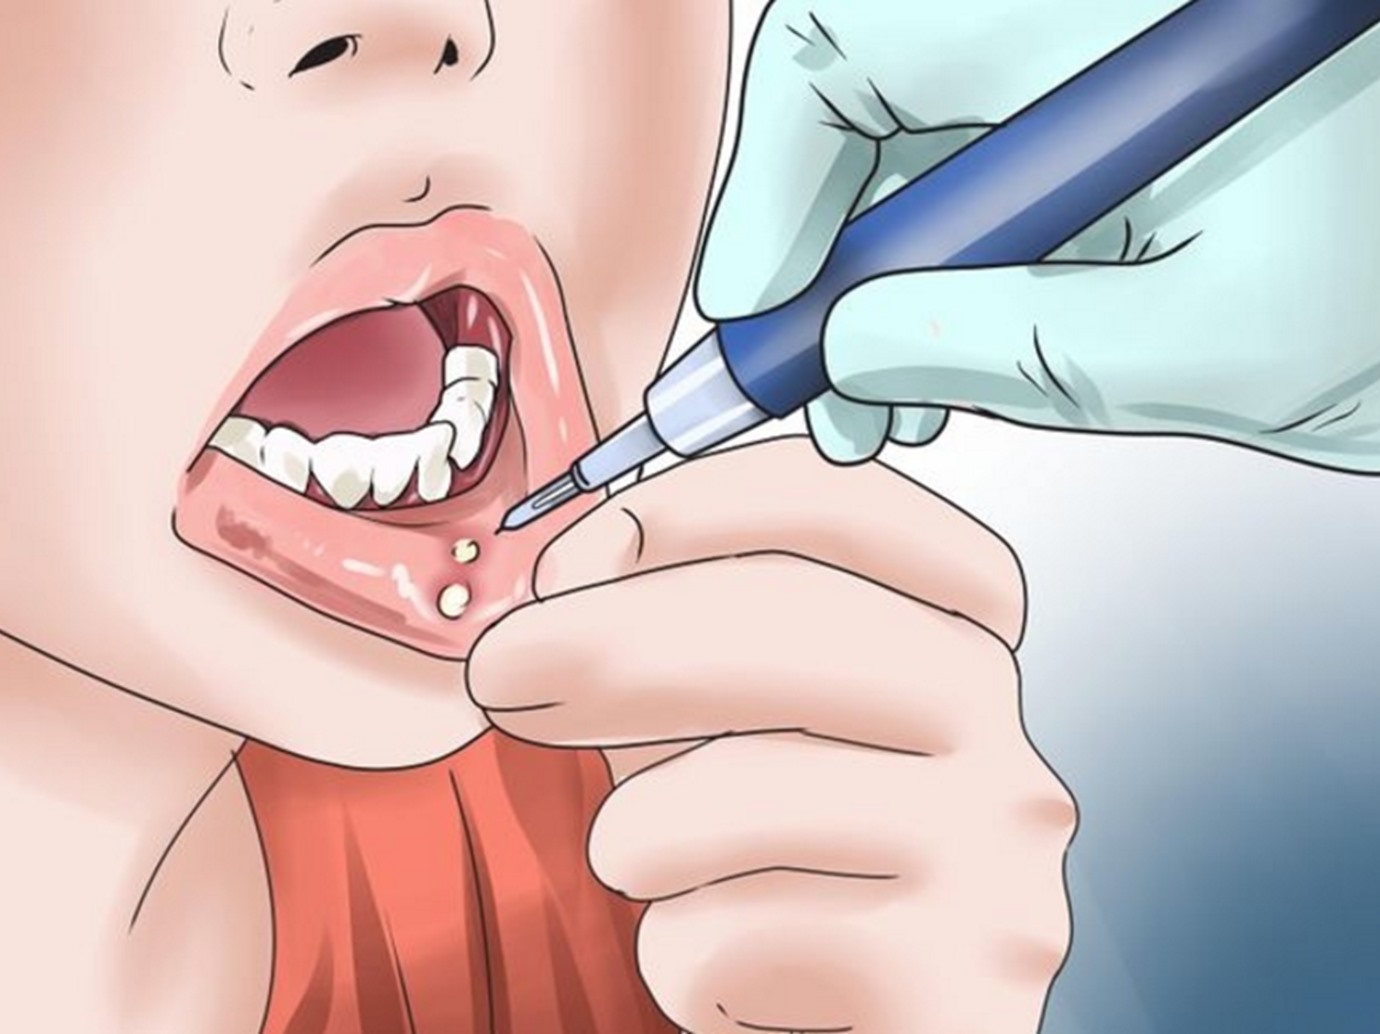 أهم اسباب تقرحات الفم وأعراضها وكيفية علاجها